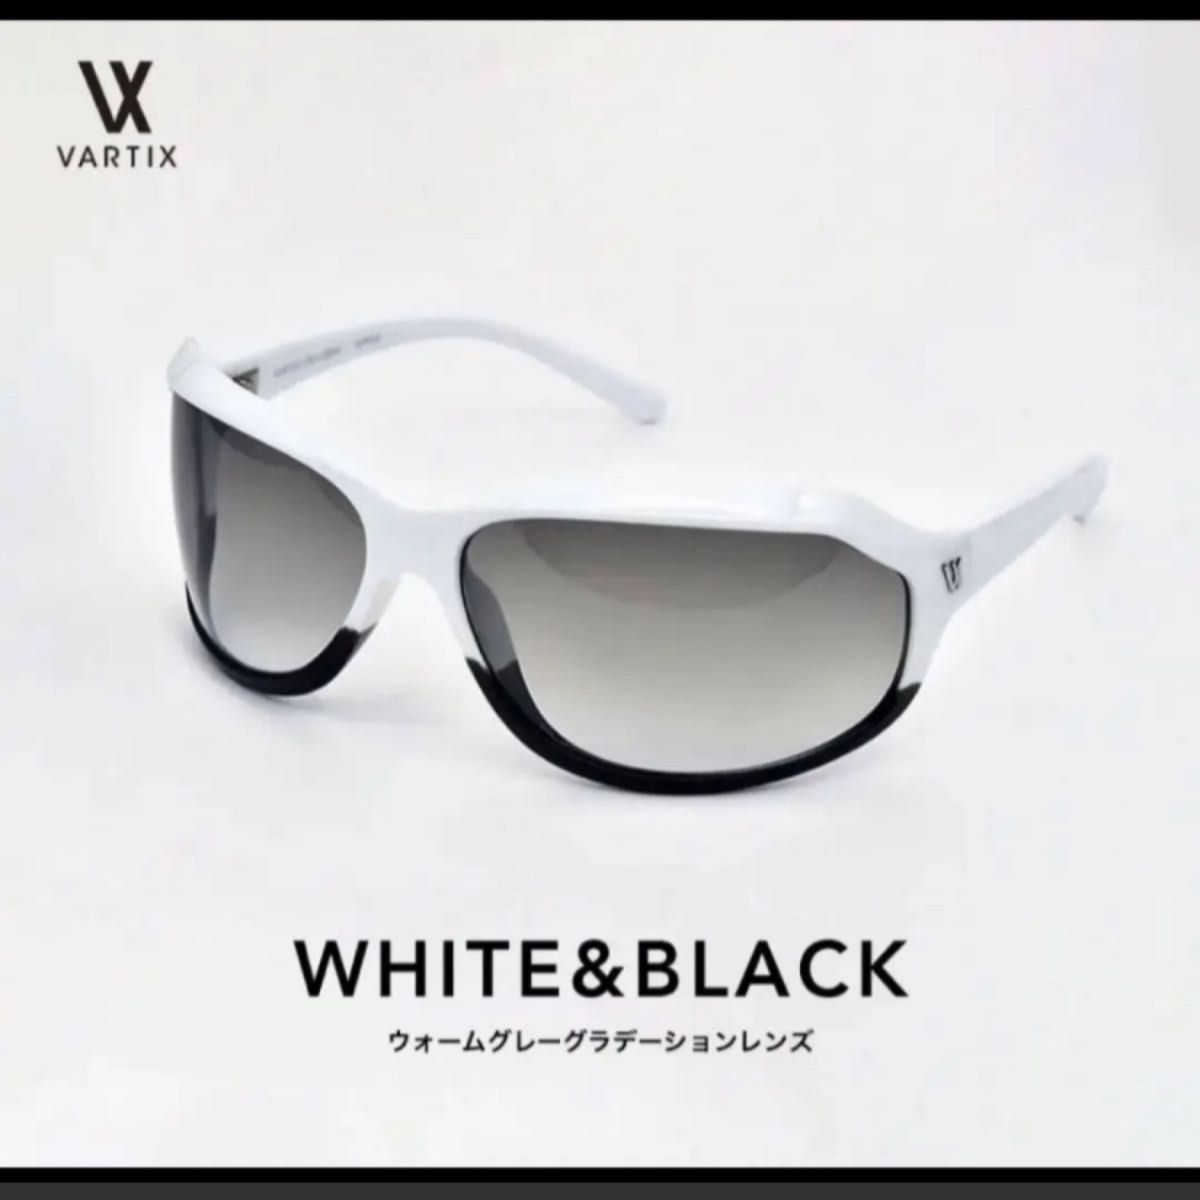 新品 vartix ホワイト&ブラック VX-i-23bs サングラス Gackt